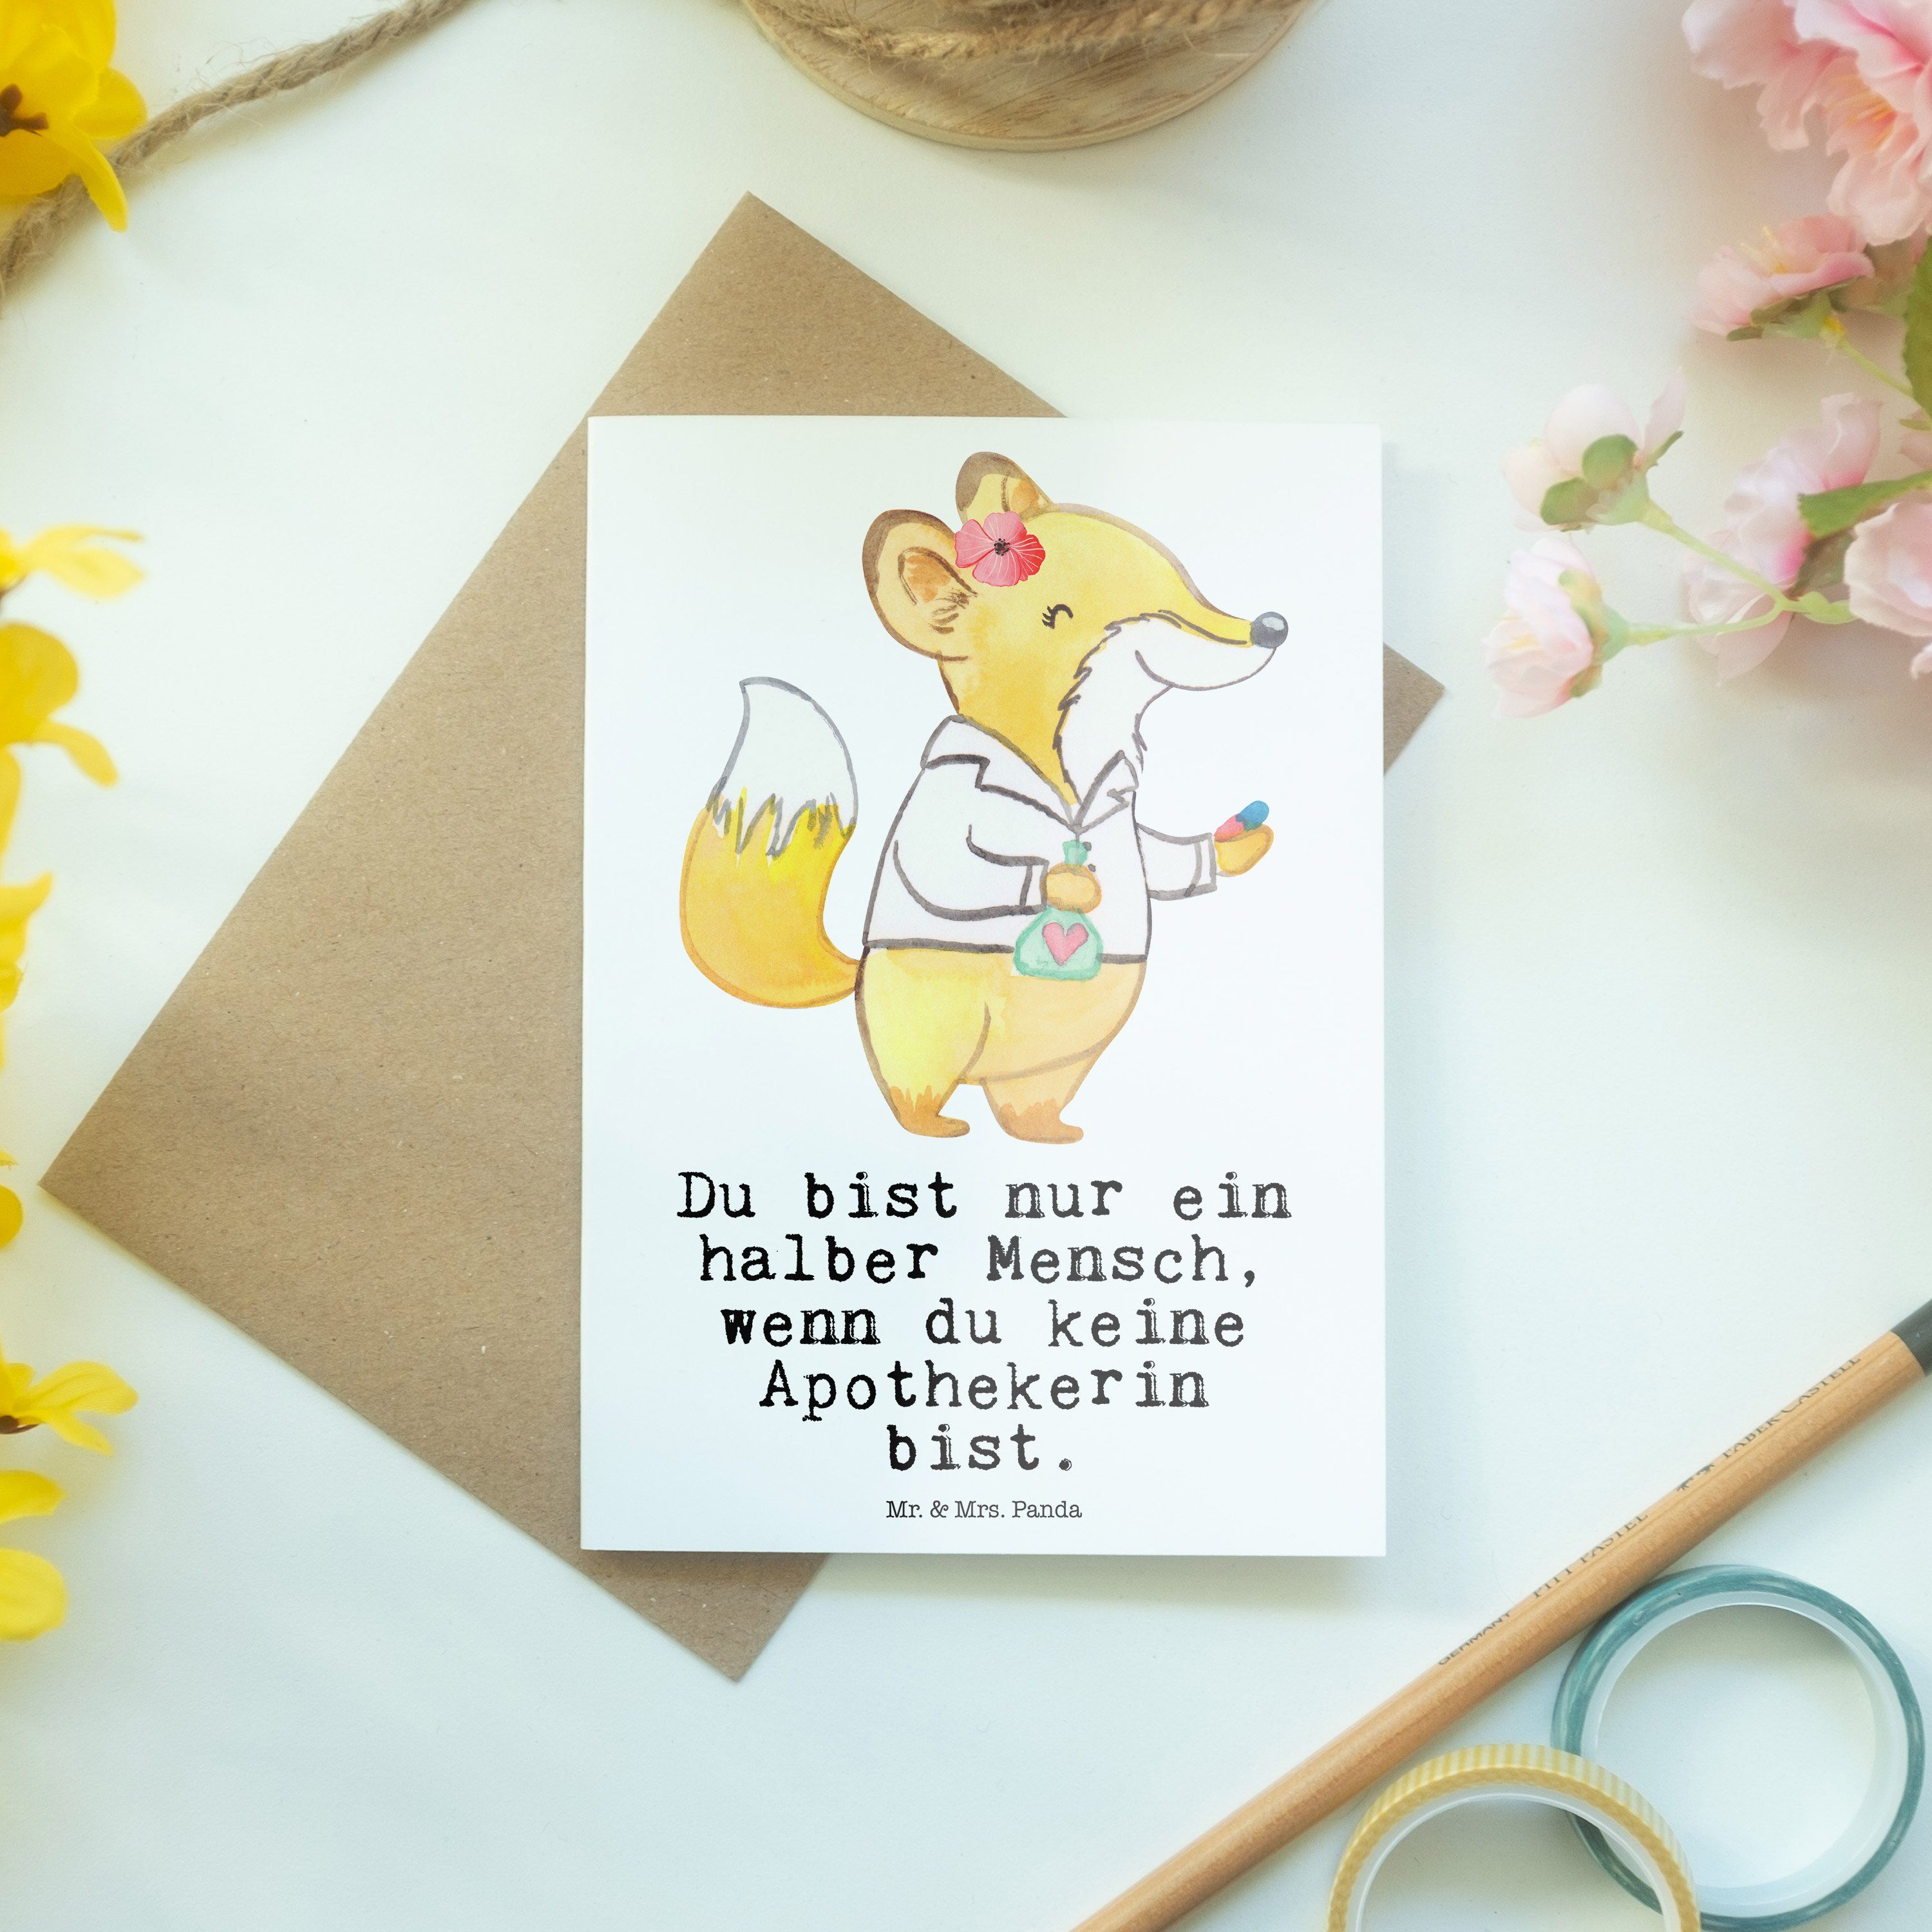 Mr. & Mrs. Apothekerin - krank, - Herz Grußkarte Schenk mit Kollege, Rente, Panda Weiß Geschenk